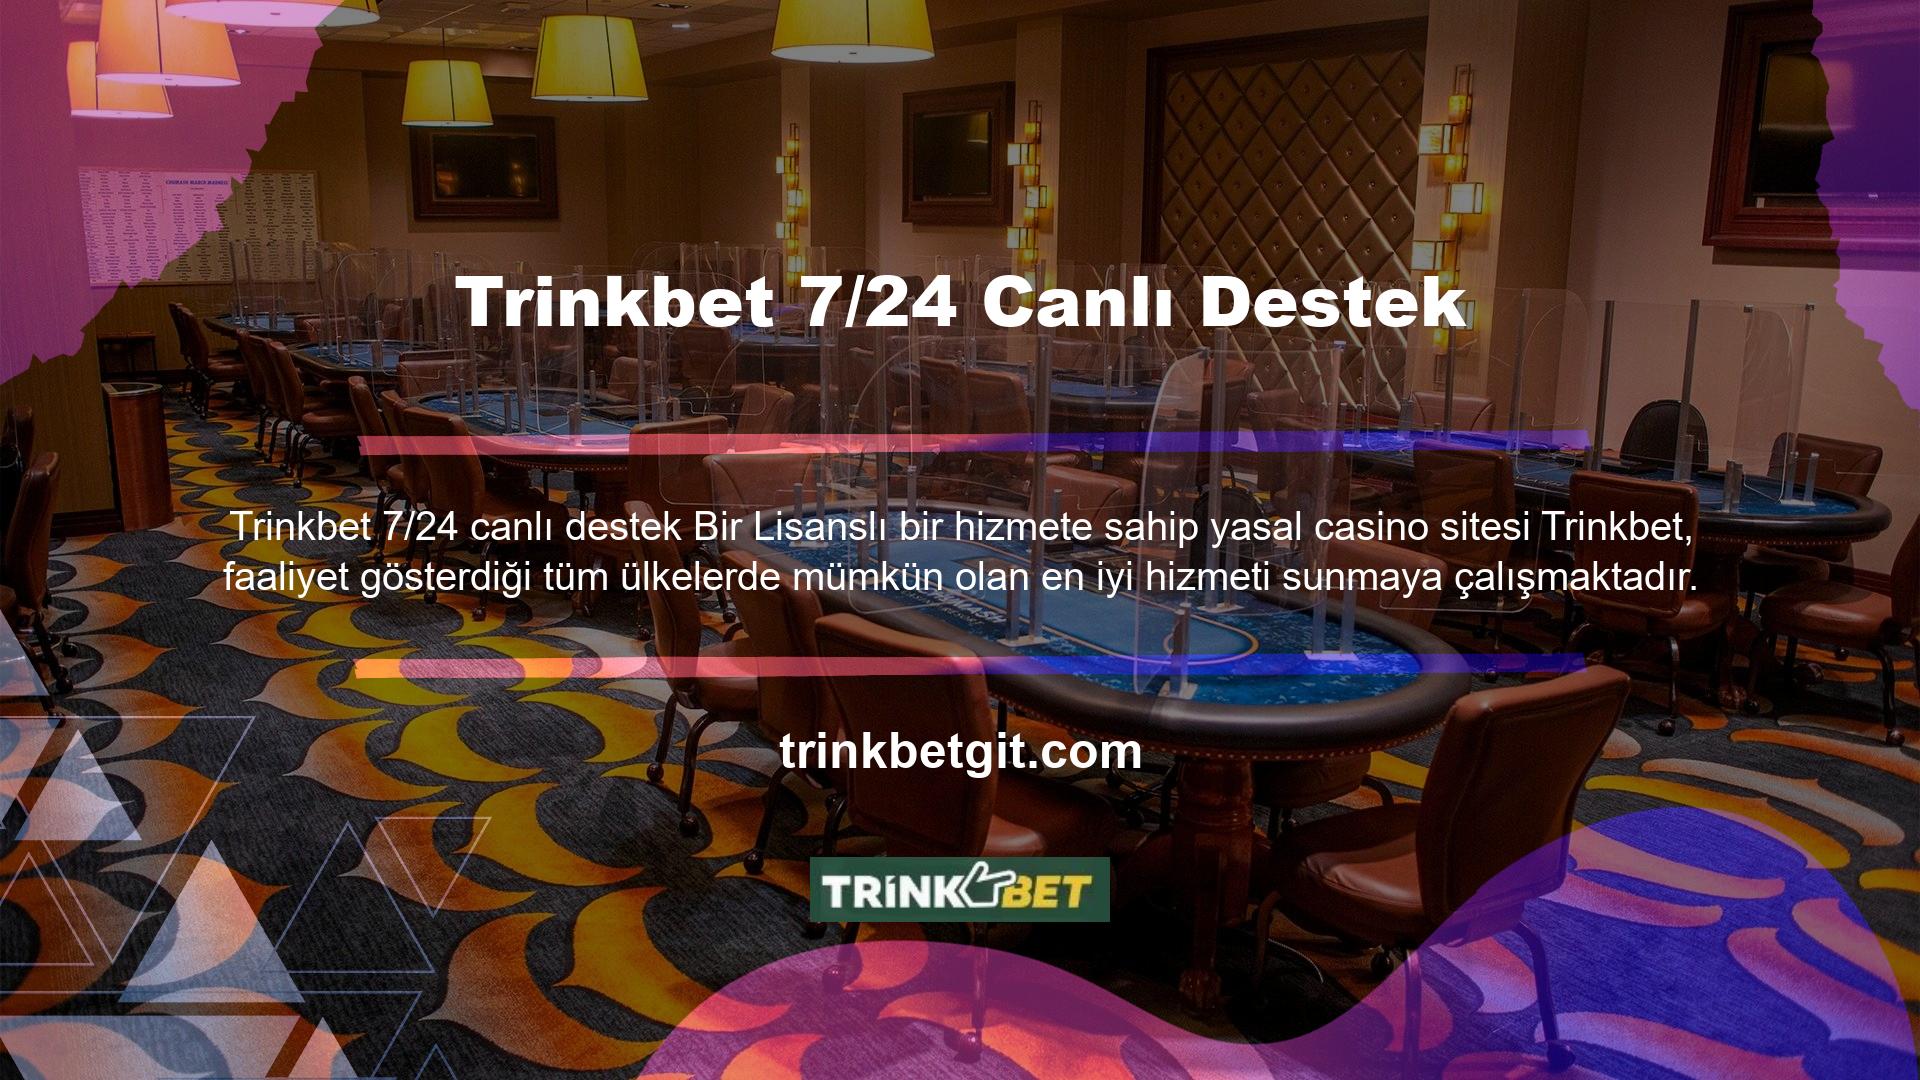 Türk casino pazarında casino oyun hizmetleri sunmaya devam ediyoruz